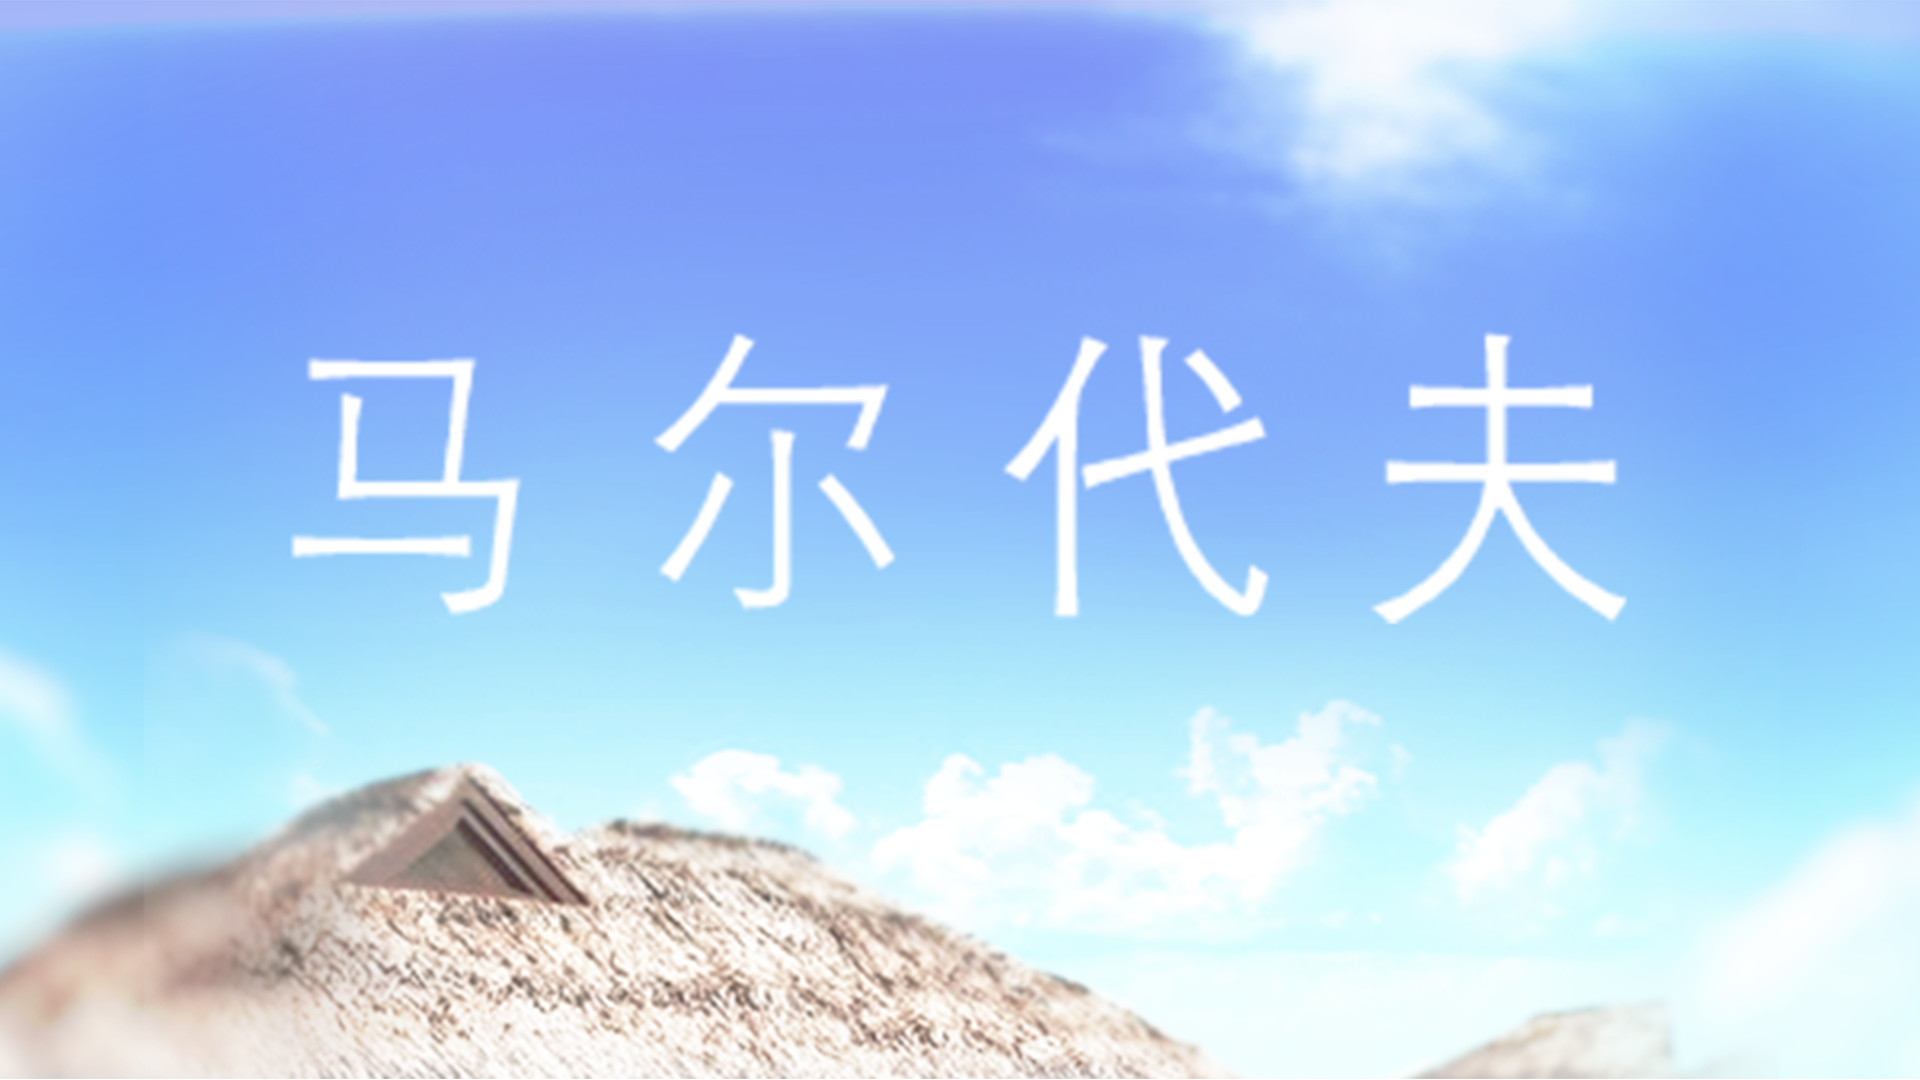 Banner of ម៉ាល់ឌីវ៖ វីឡាទឹកស្អាត 